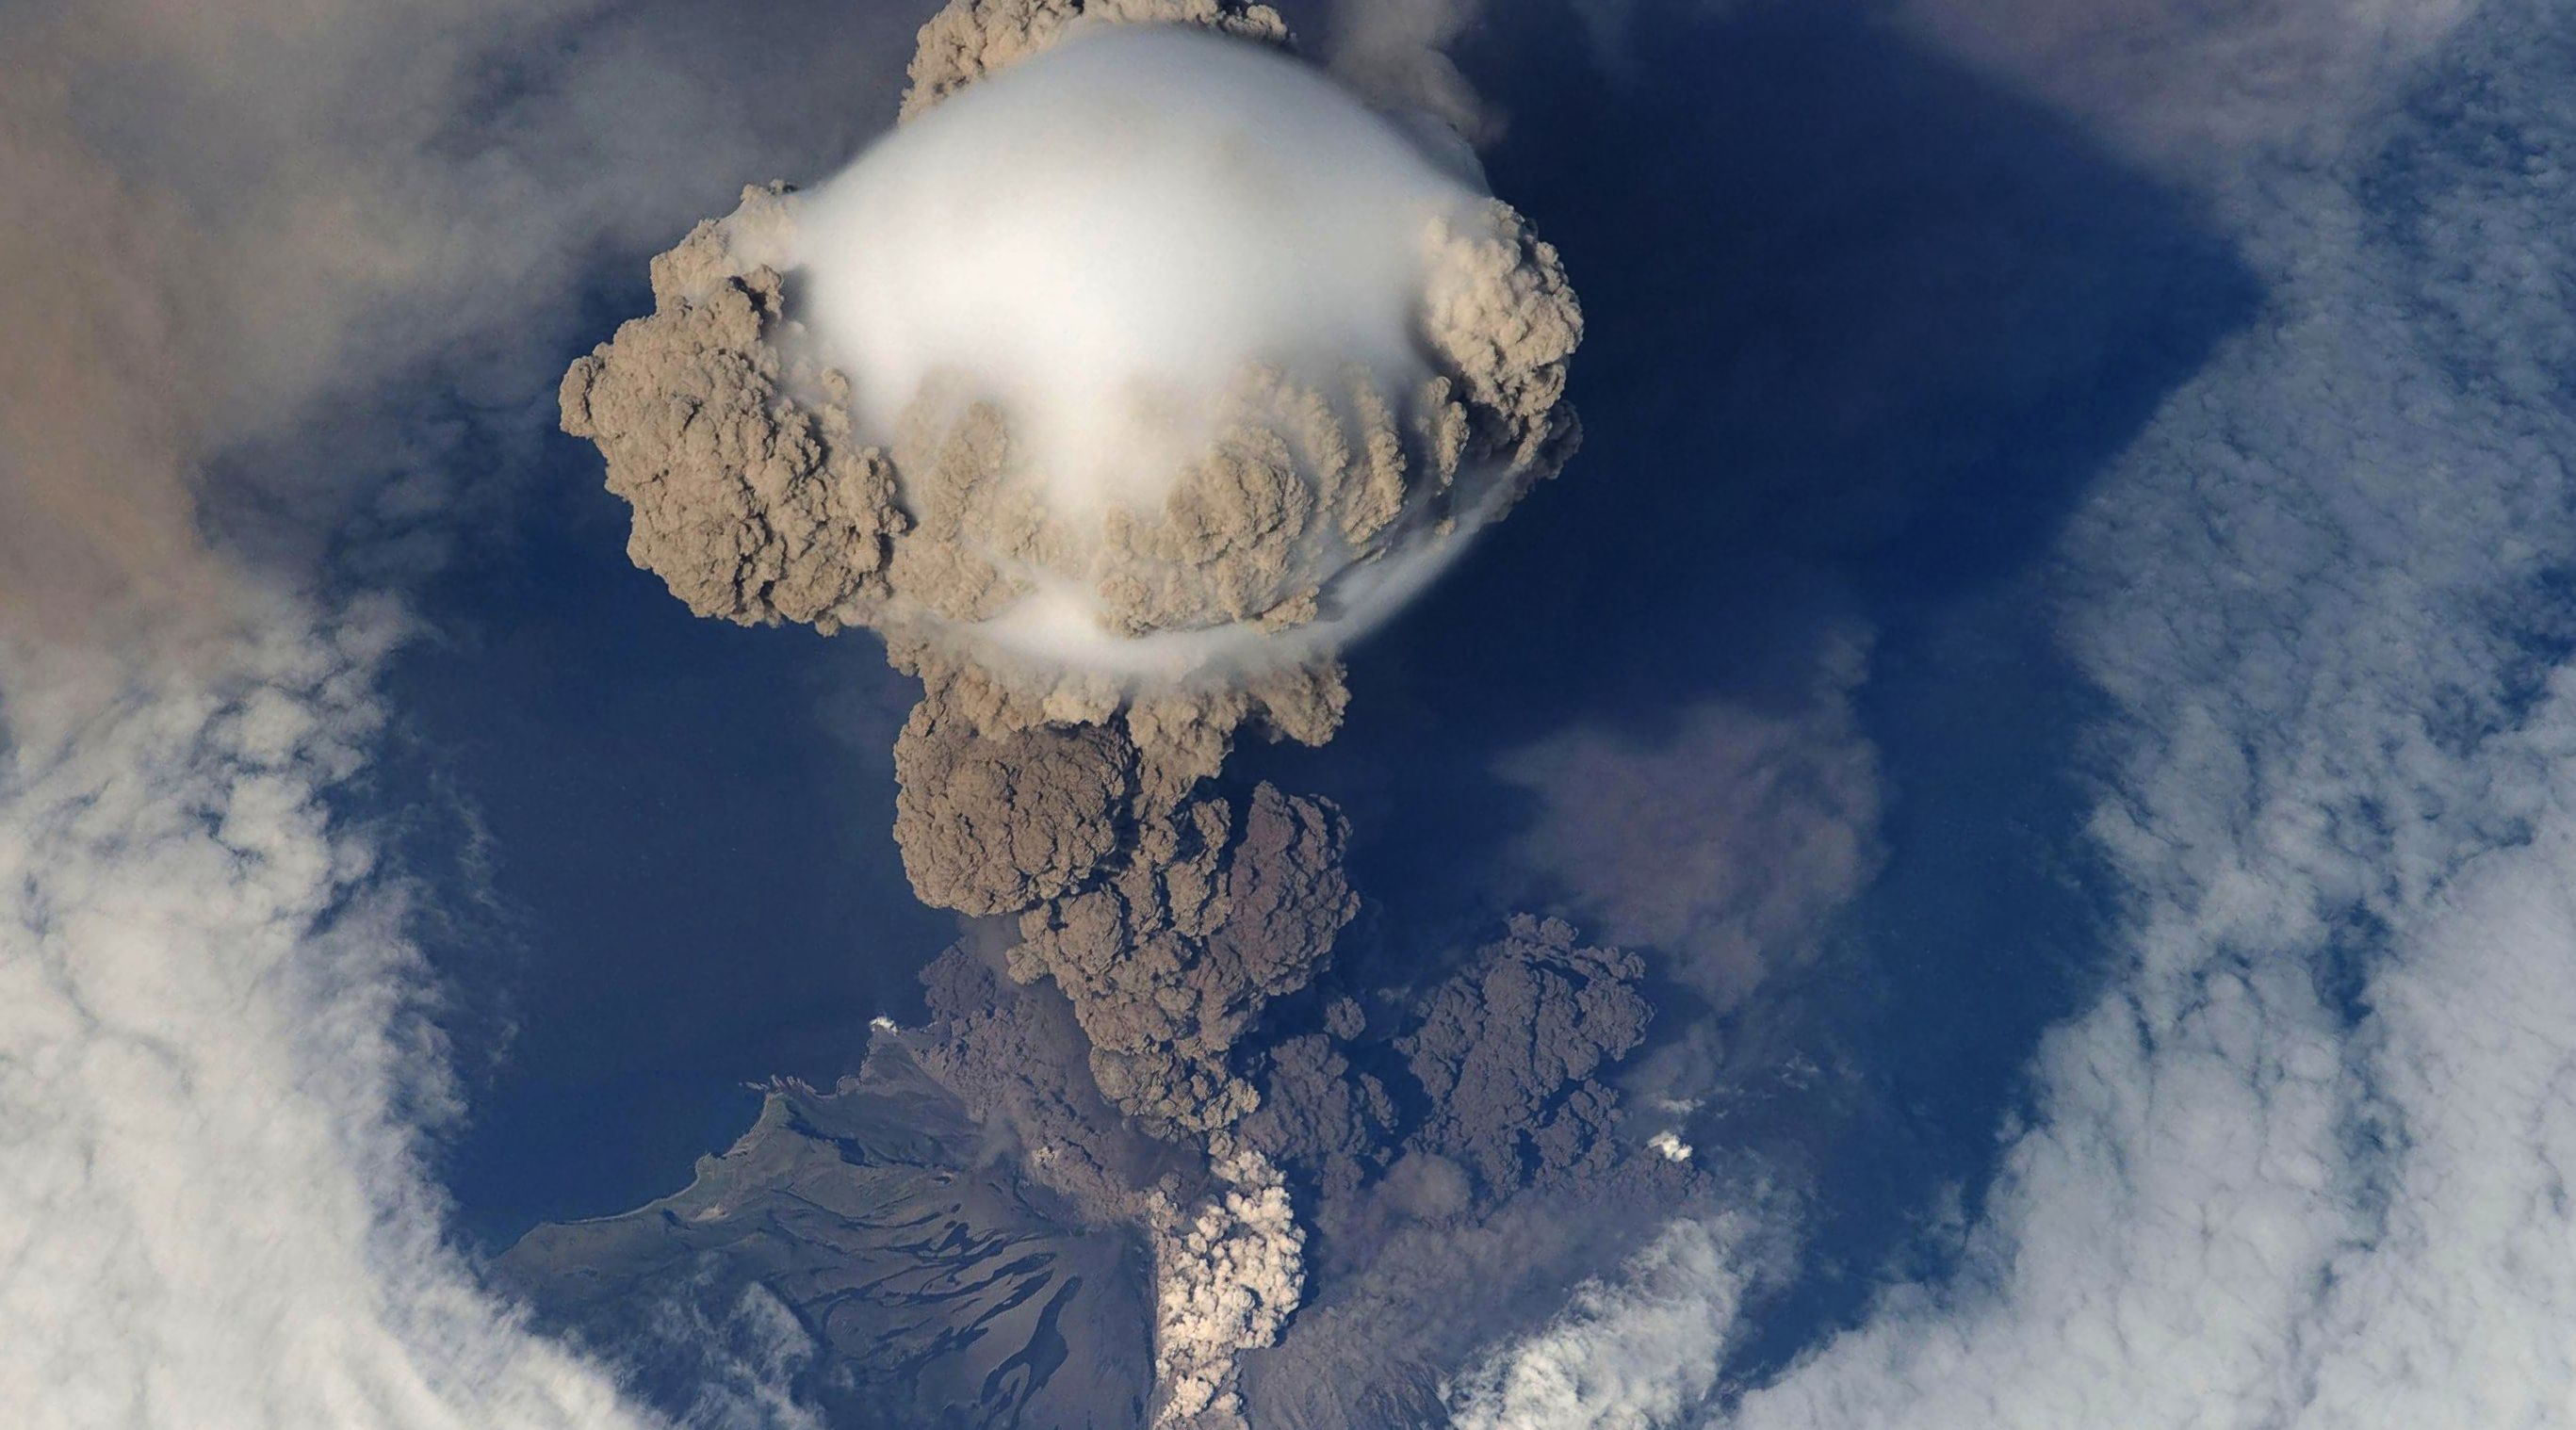 Free download wallpaper Earth, Volcano, Volcanoes on your PC desktop